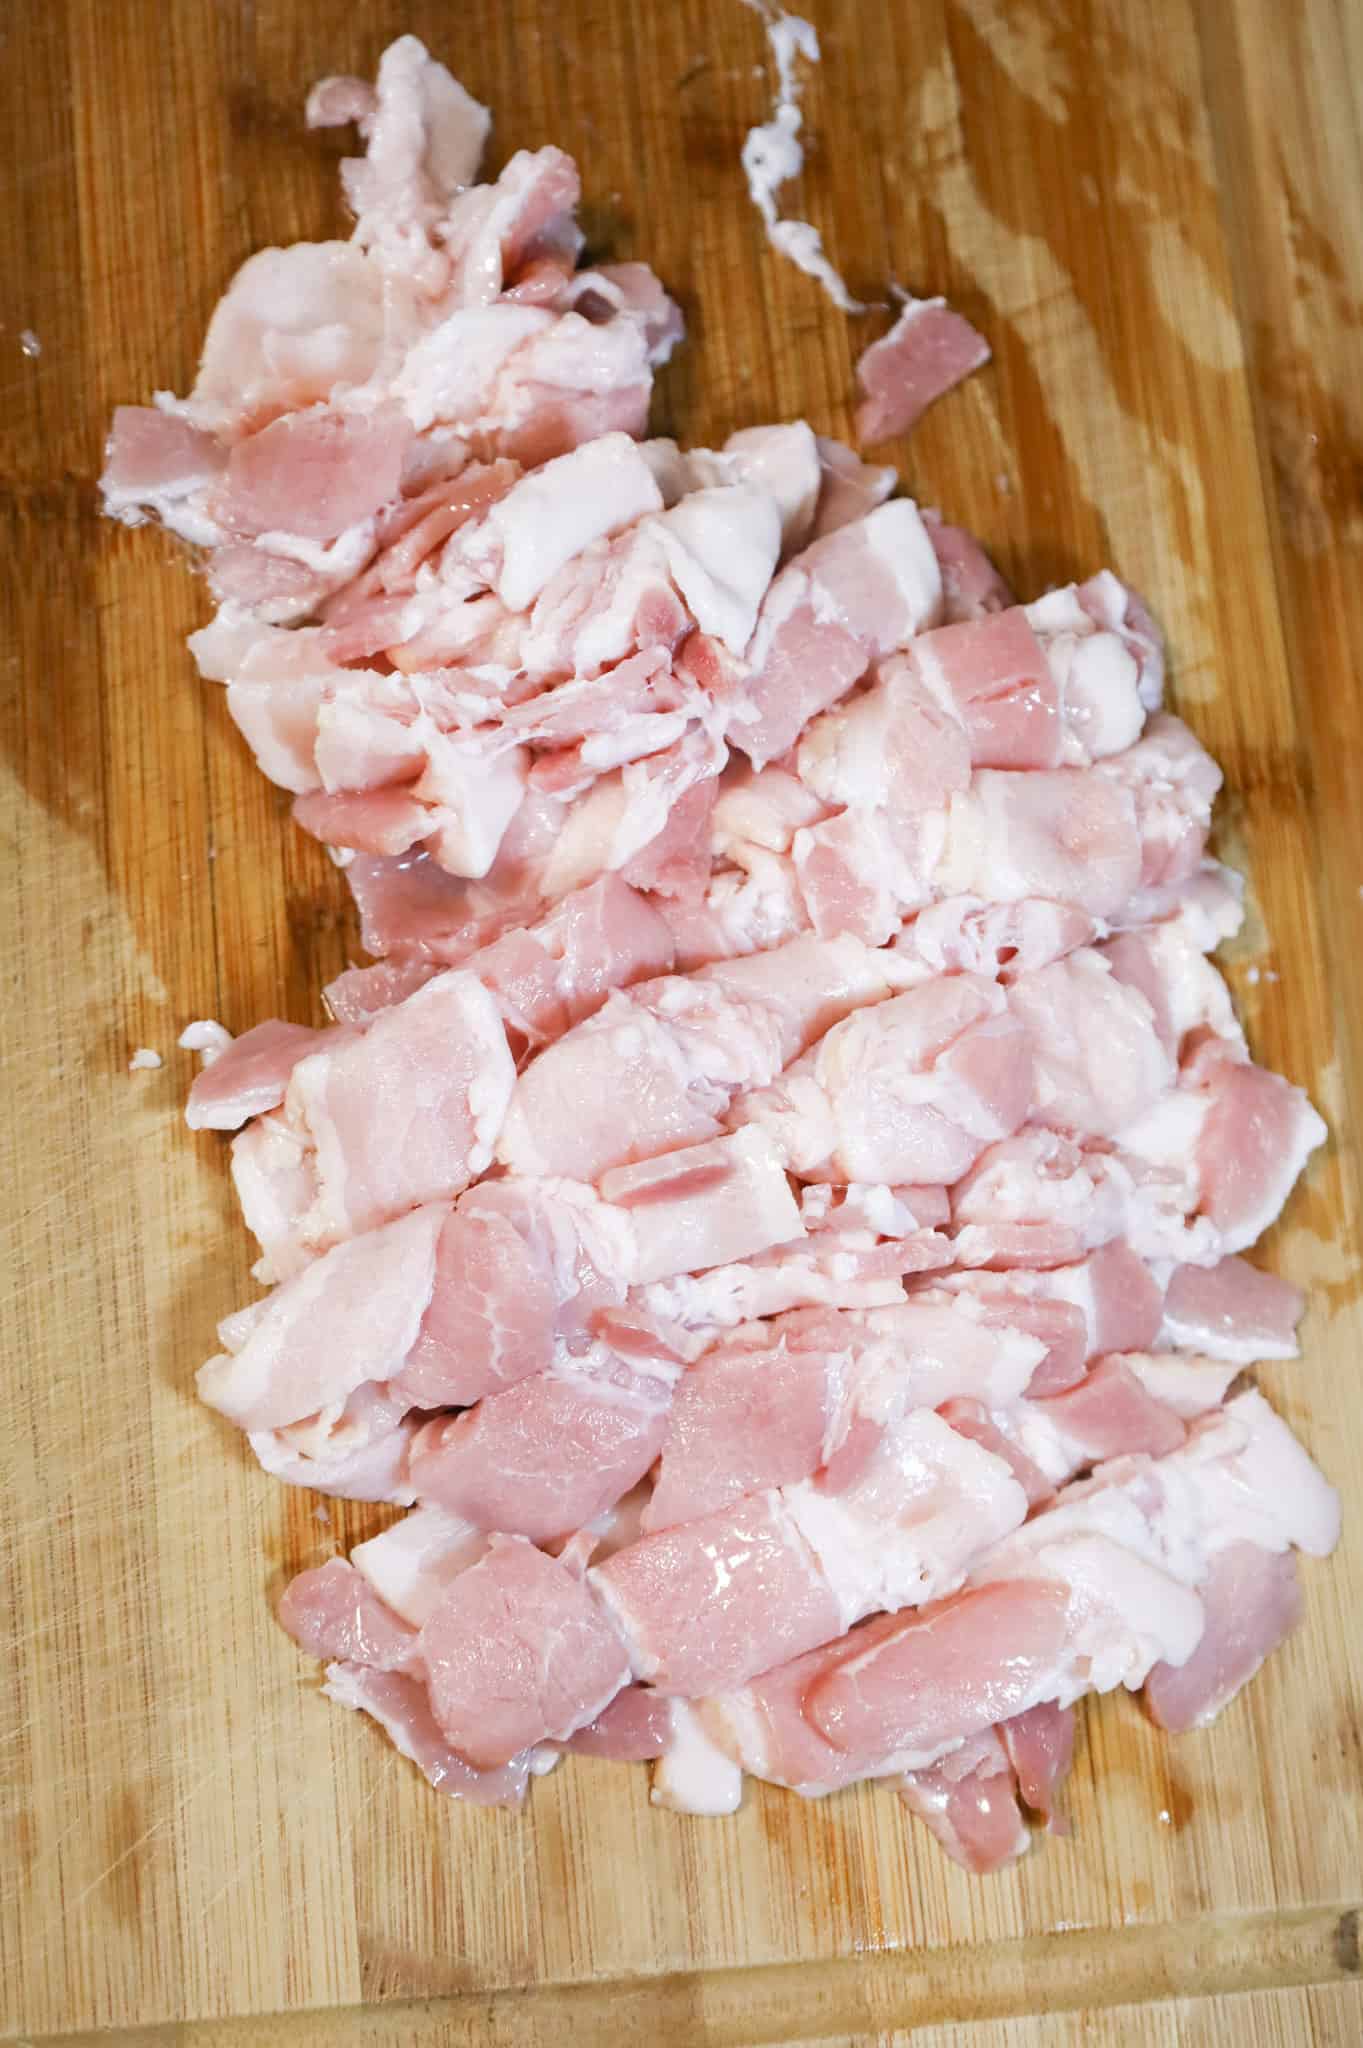 raw chopped bacon on a cutting board